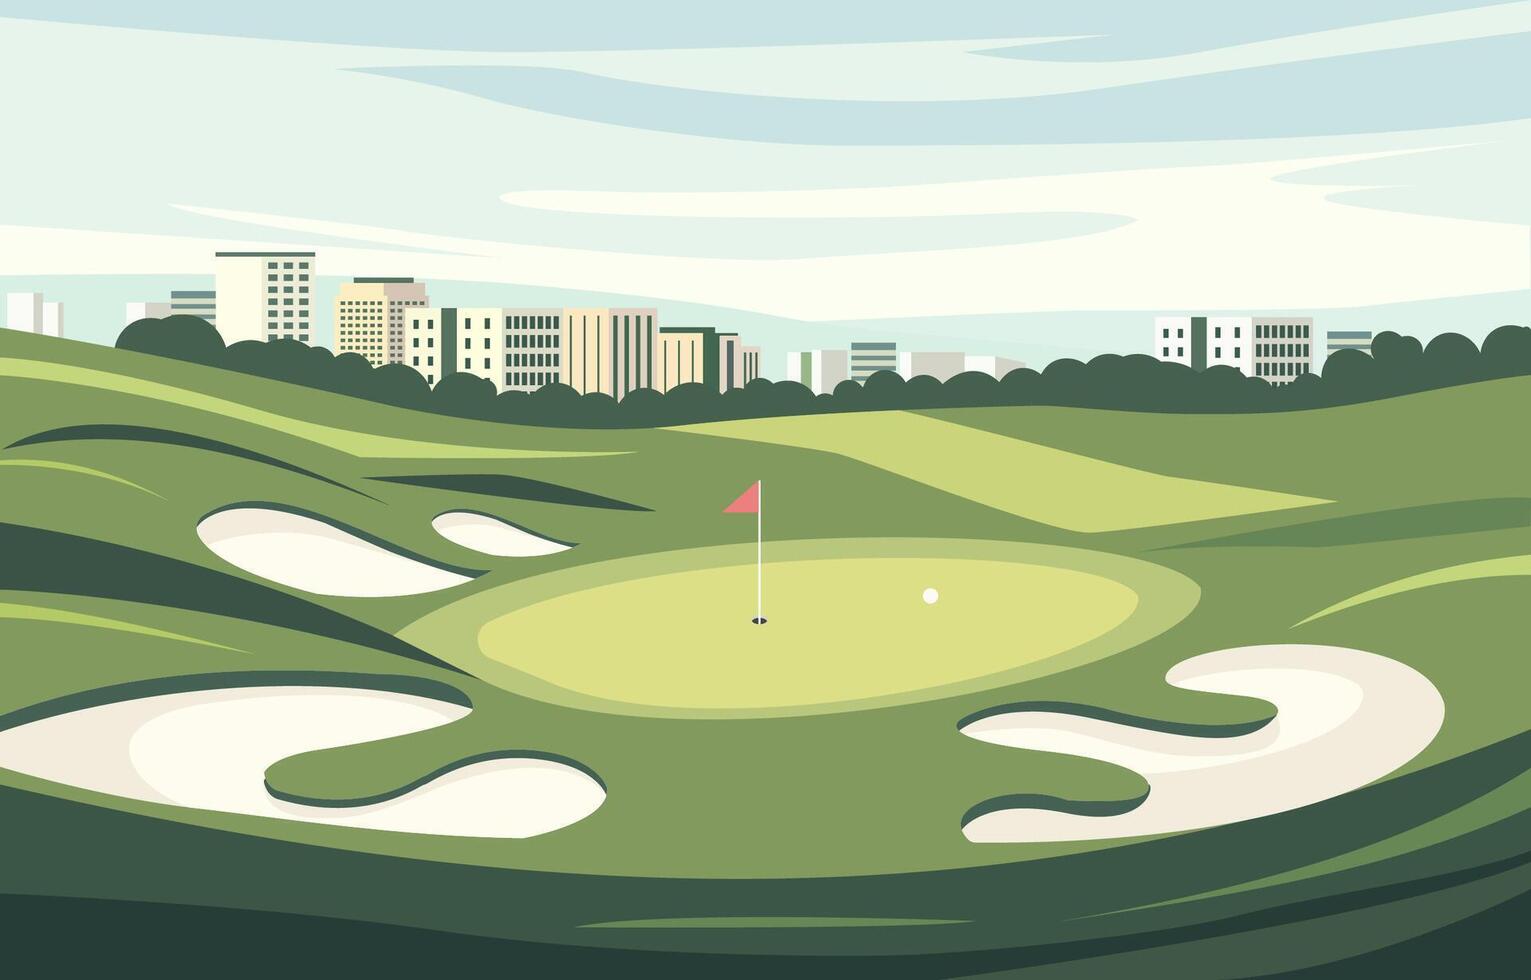 plano diseño de verde golf campo curso con paisaje urbano en brillante día vector